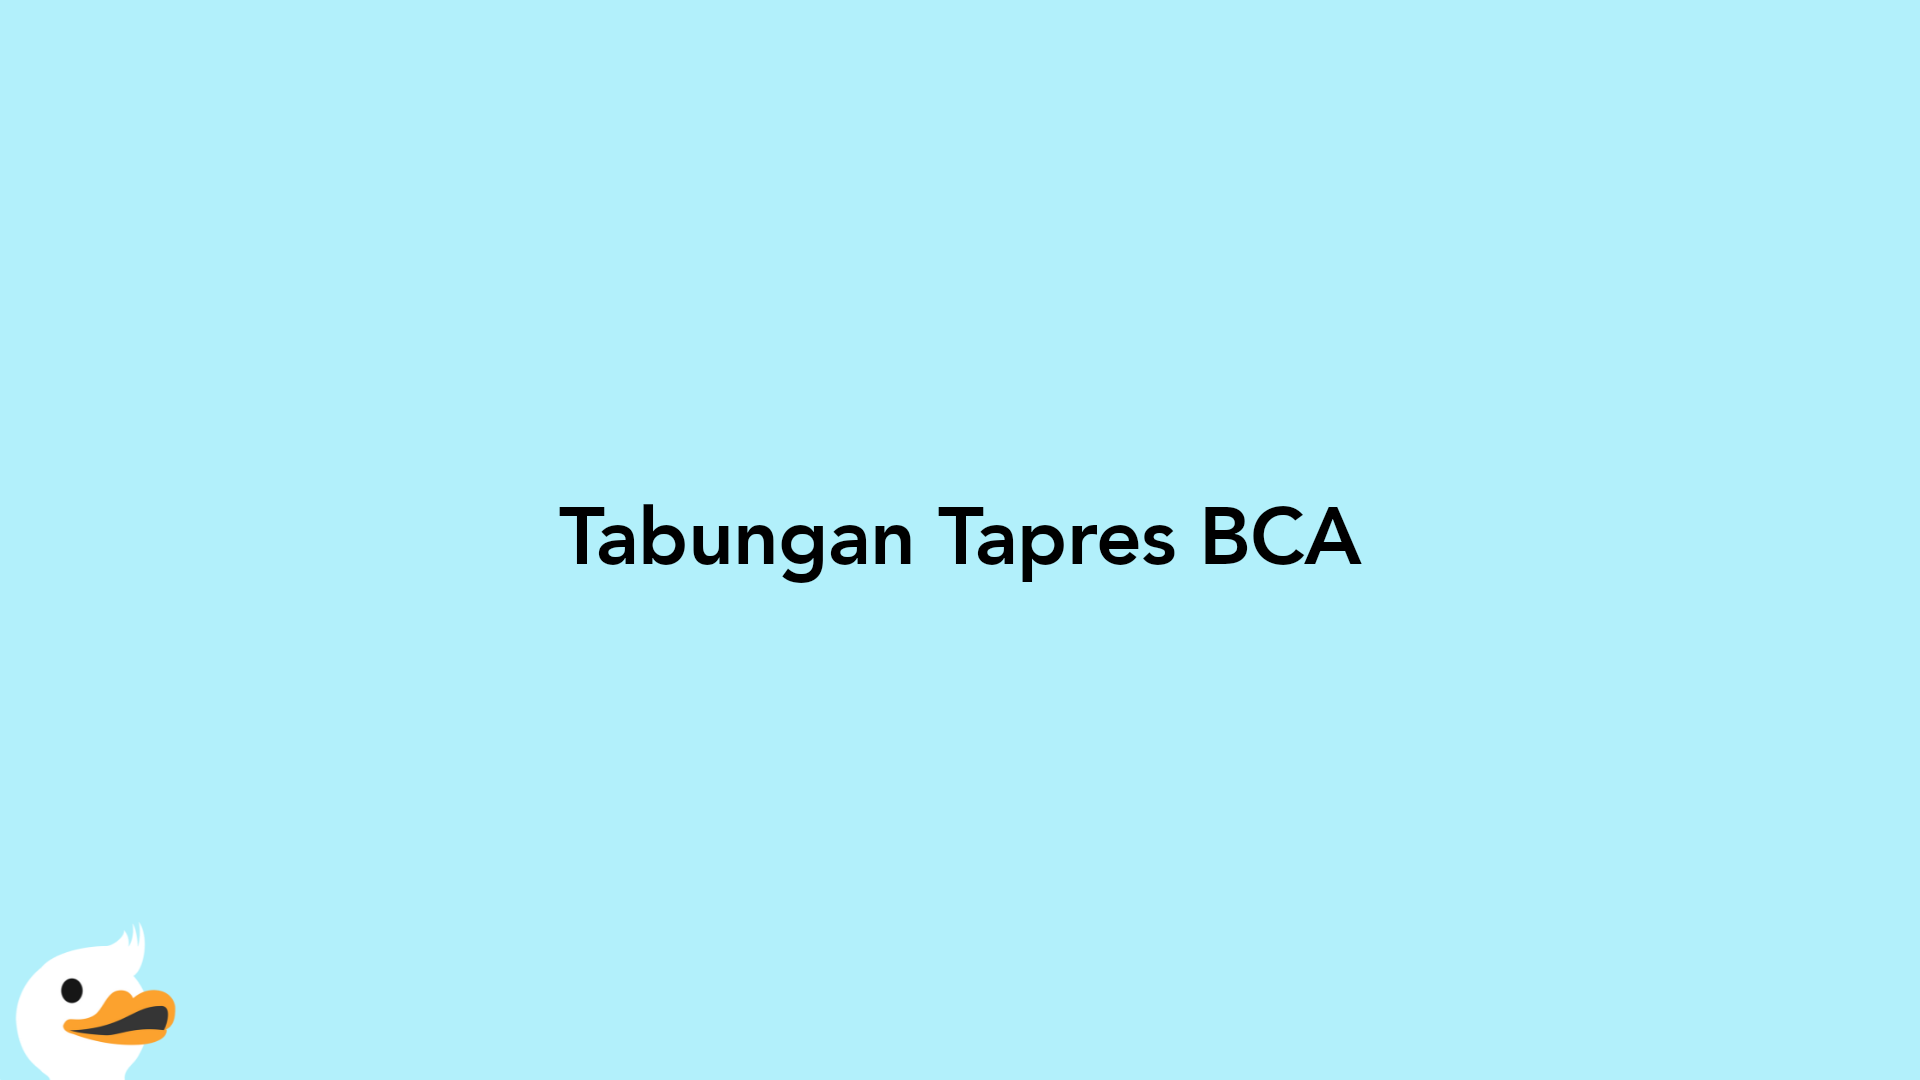 Tabungan Tapres BCA